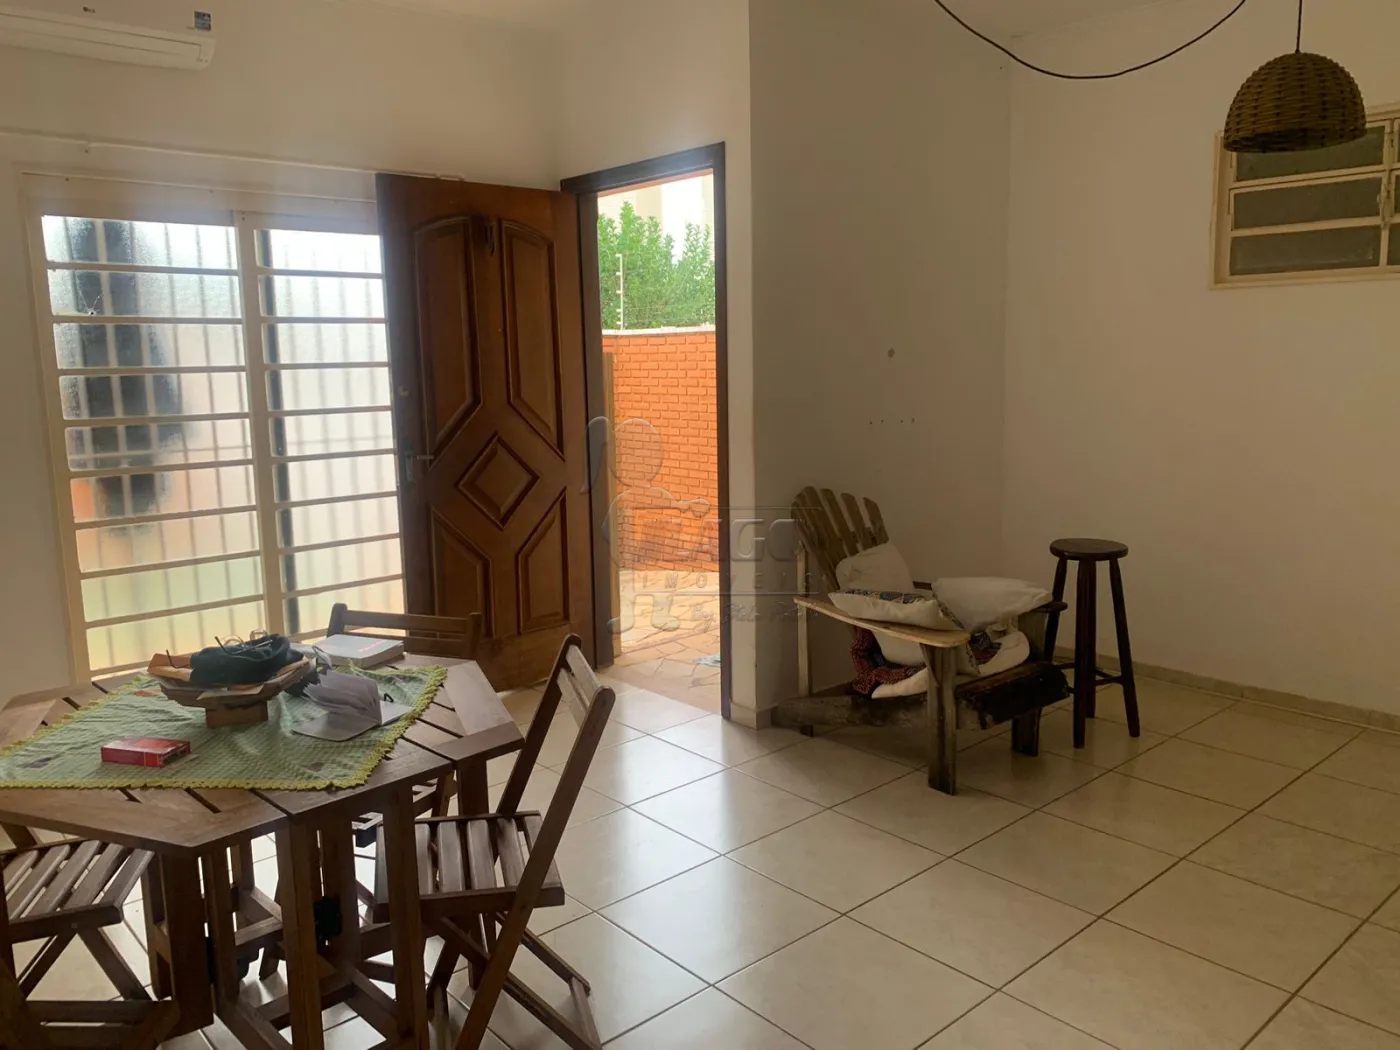 Comprar Casas / Padrão em Ribeirão Preto R$ 350.000,00 - Foto 6